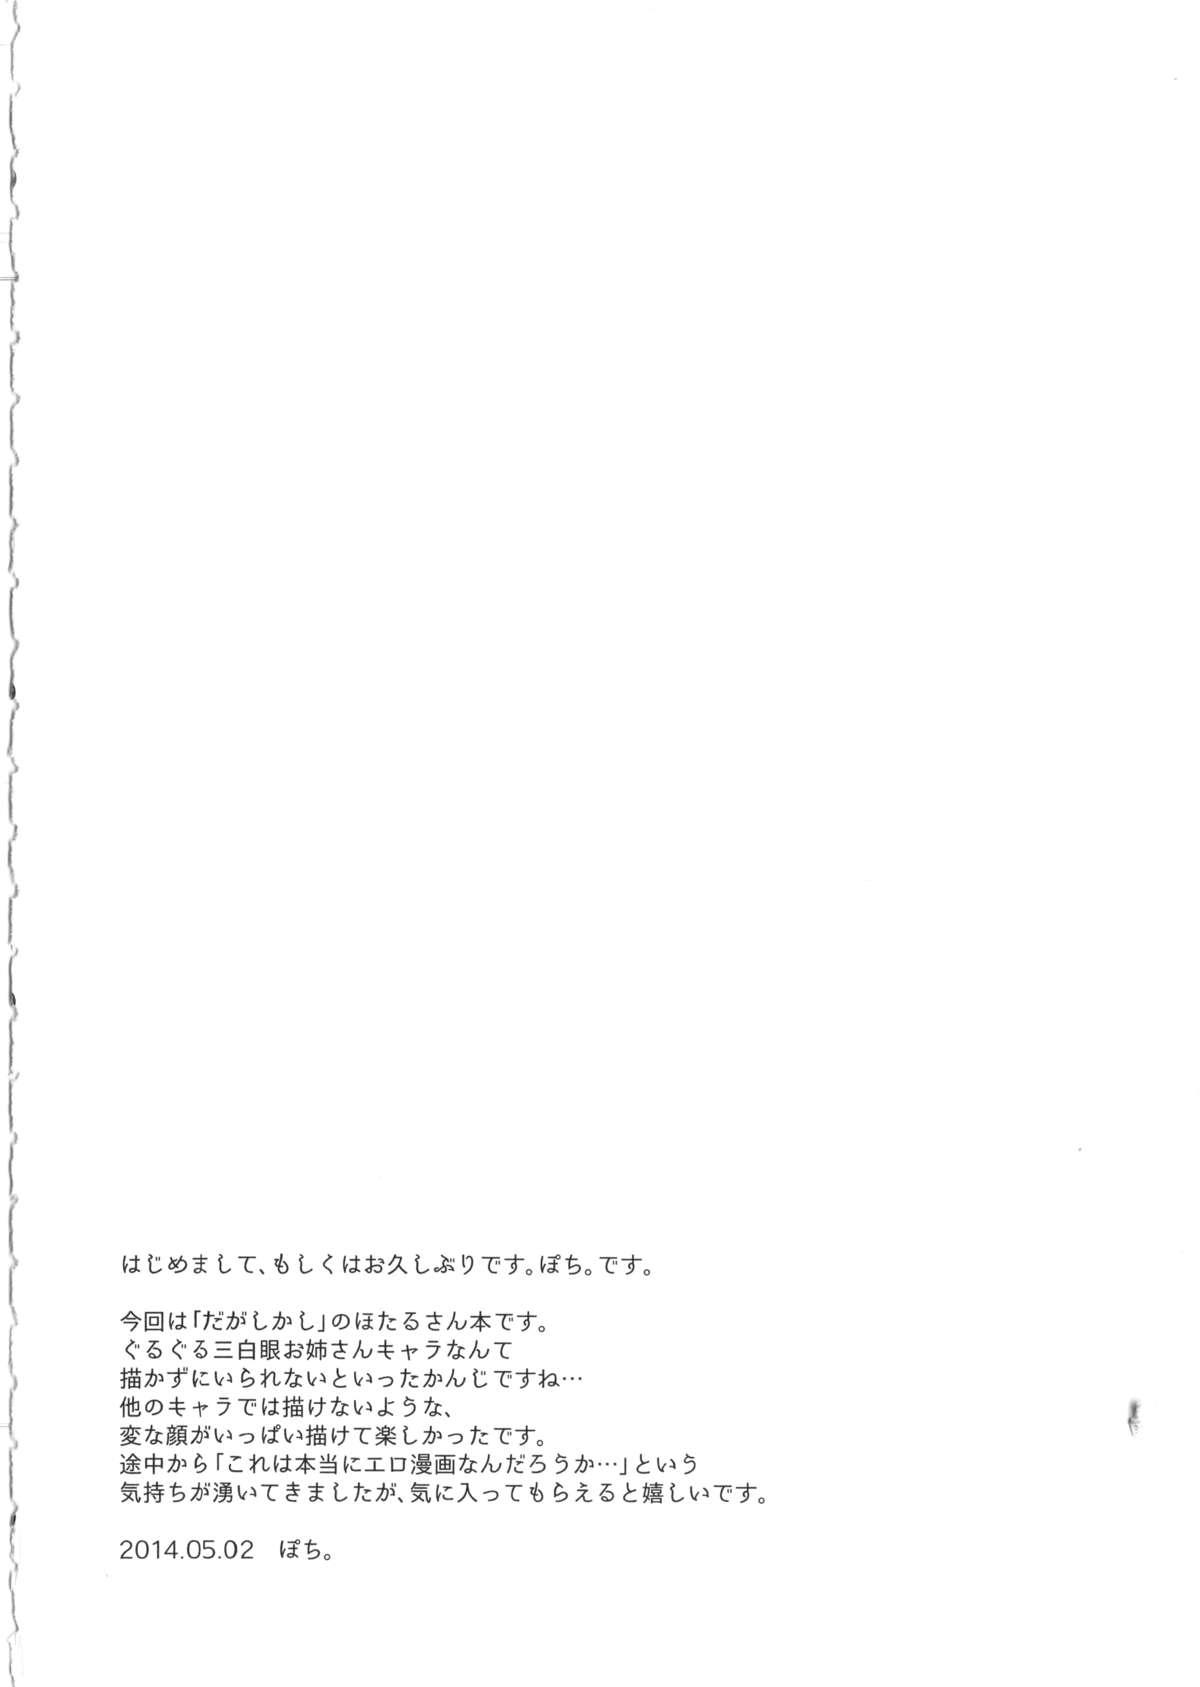 Lez Otona no dagashi - Dagashi kashi No Condom - Page 3